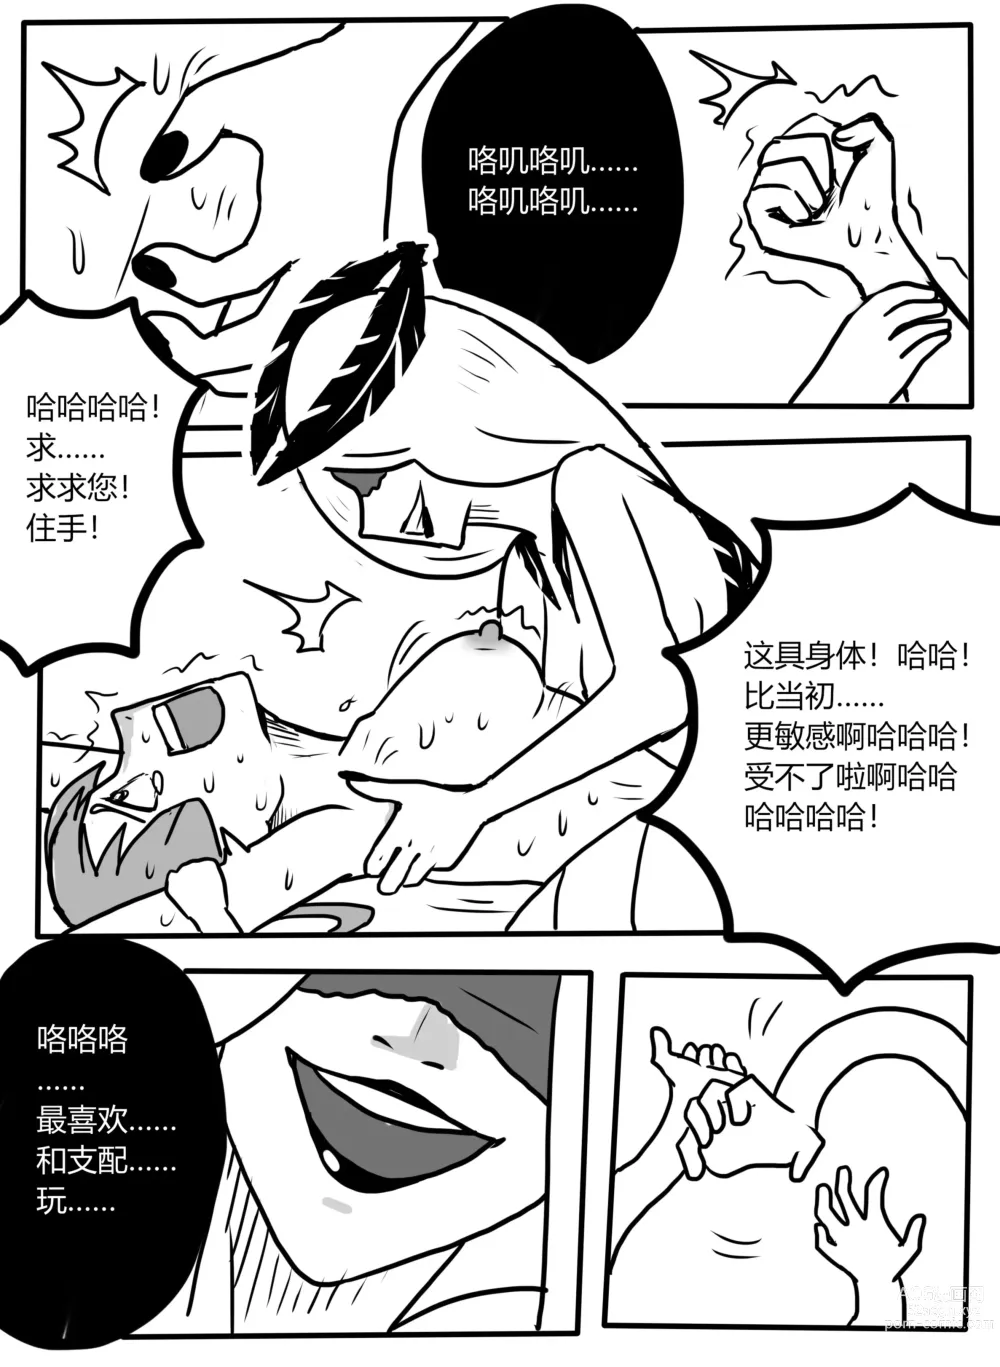 Page 10 of manga Makima tk manga